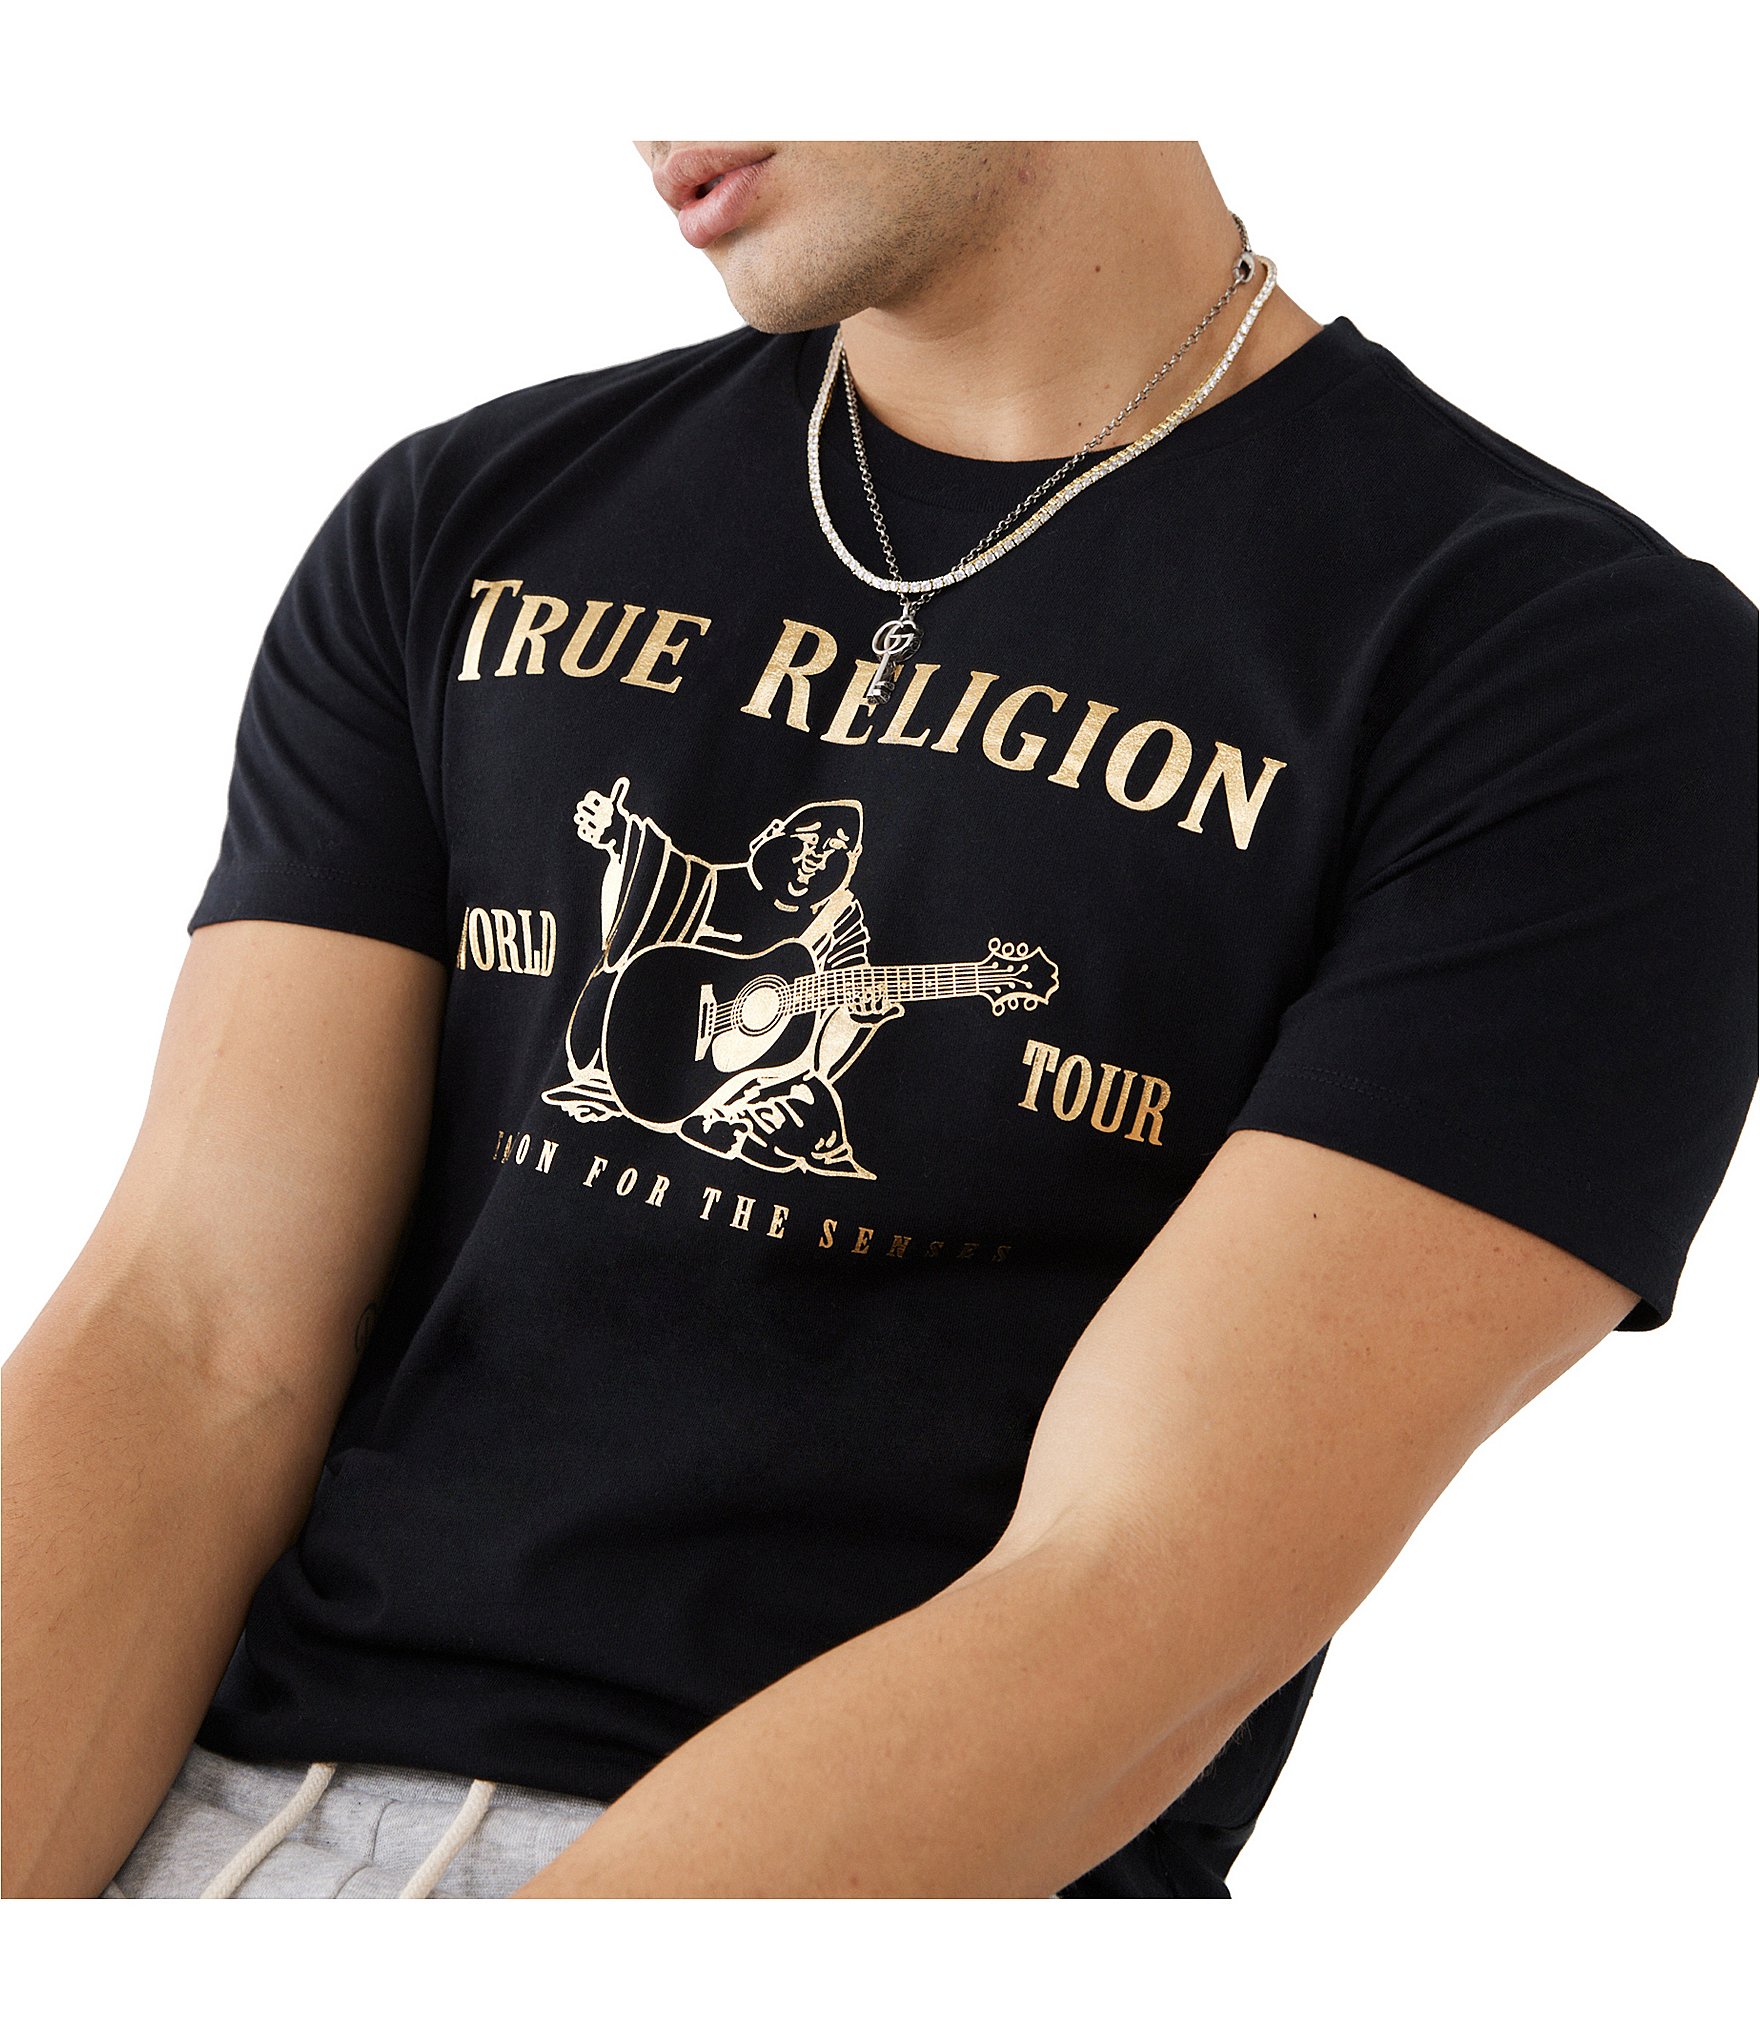 True religion plandetransformacion.unirioja.es